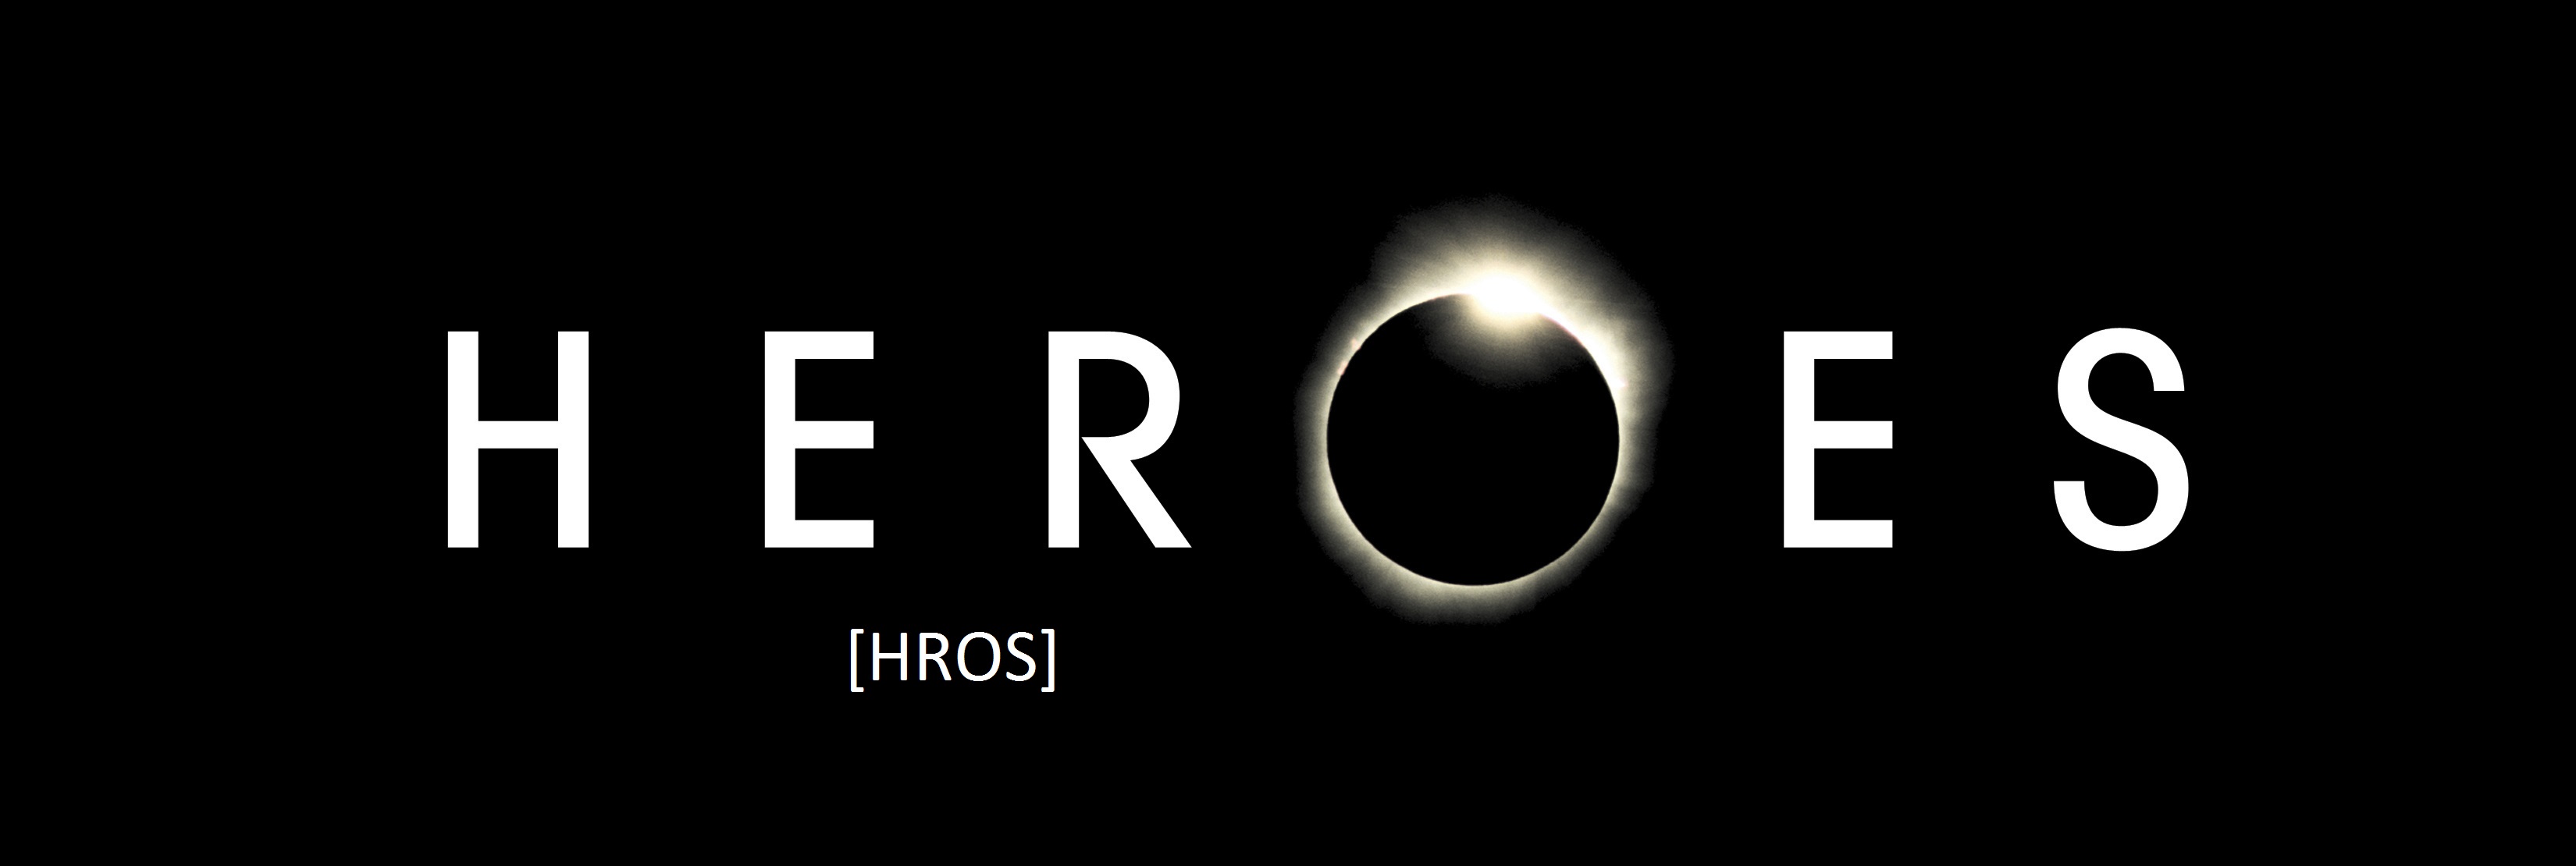 Heroes_logo.jpg